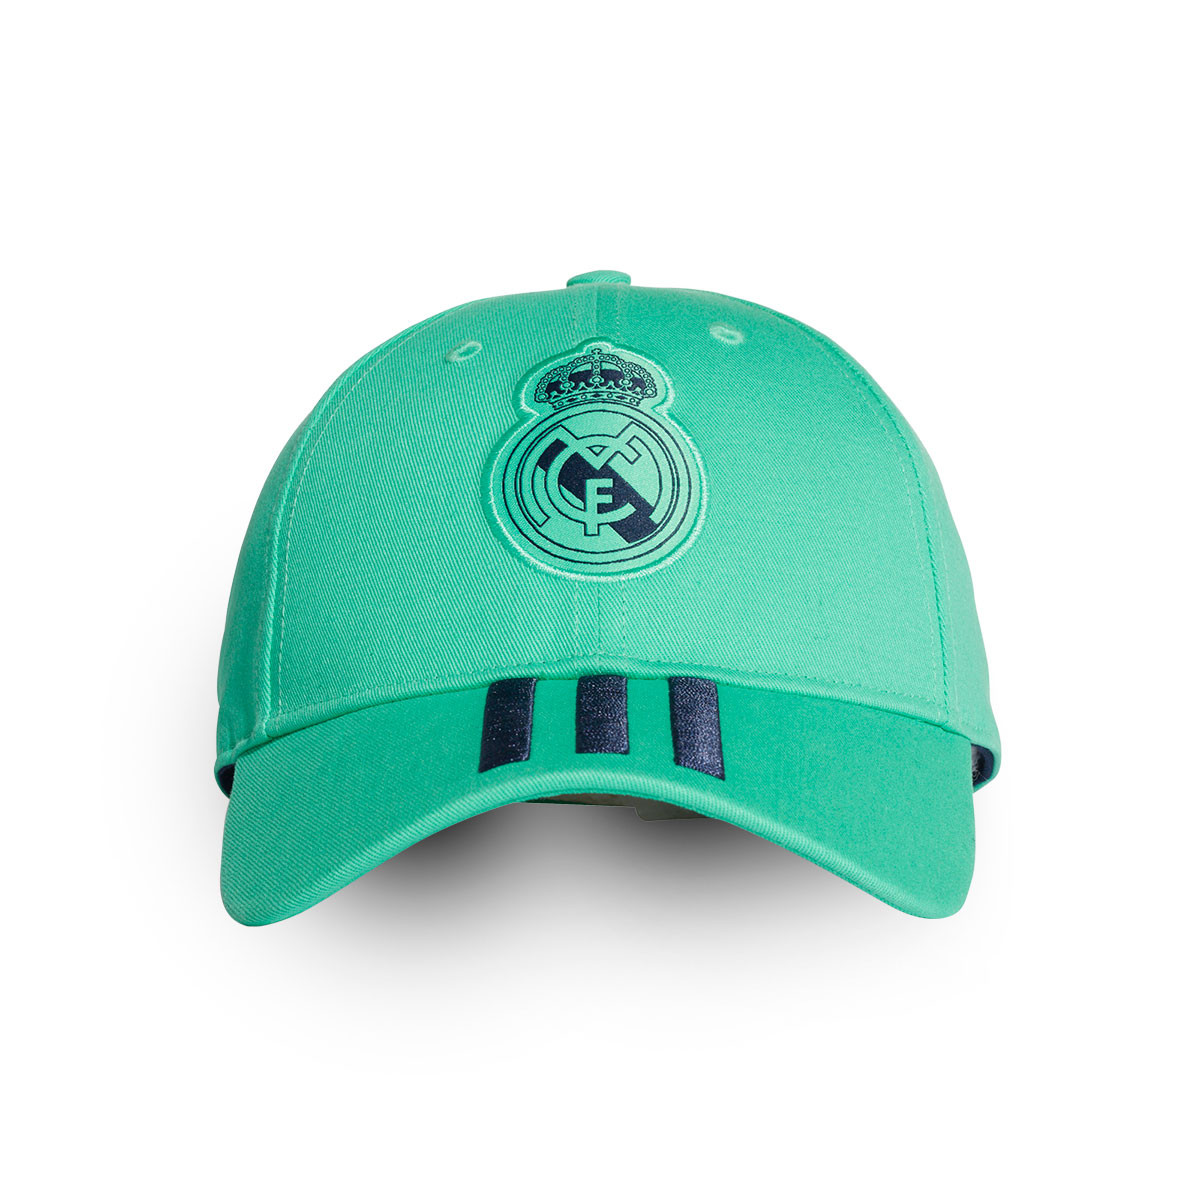 cappello adidas verde